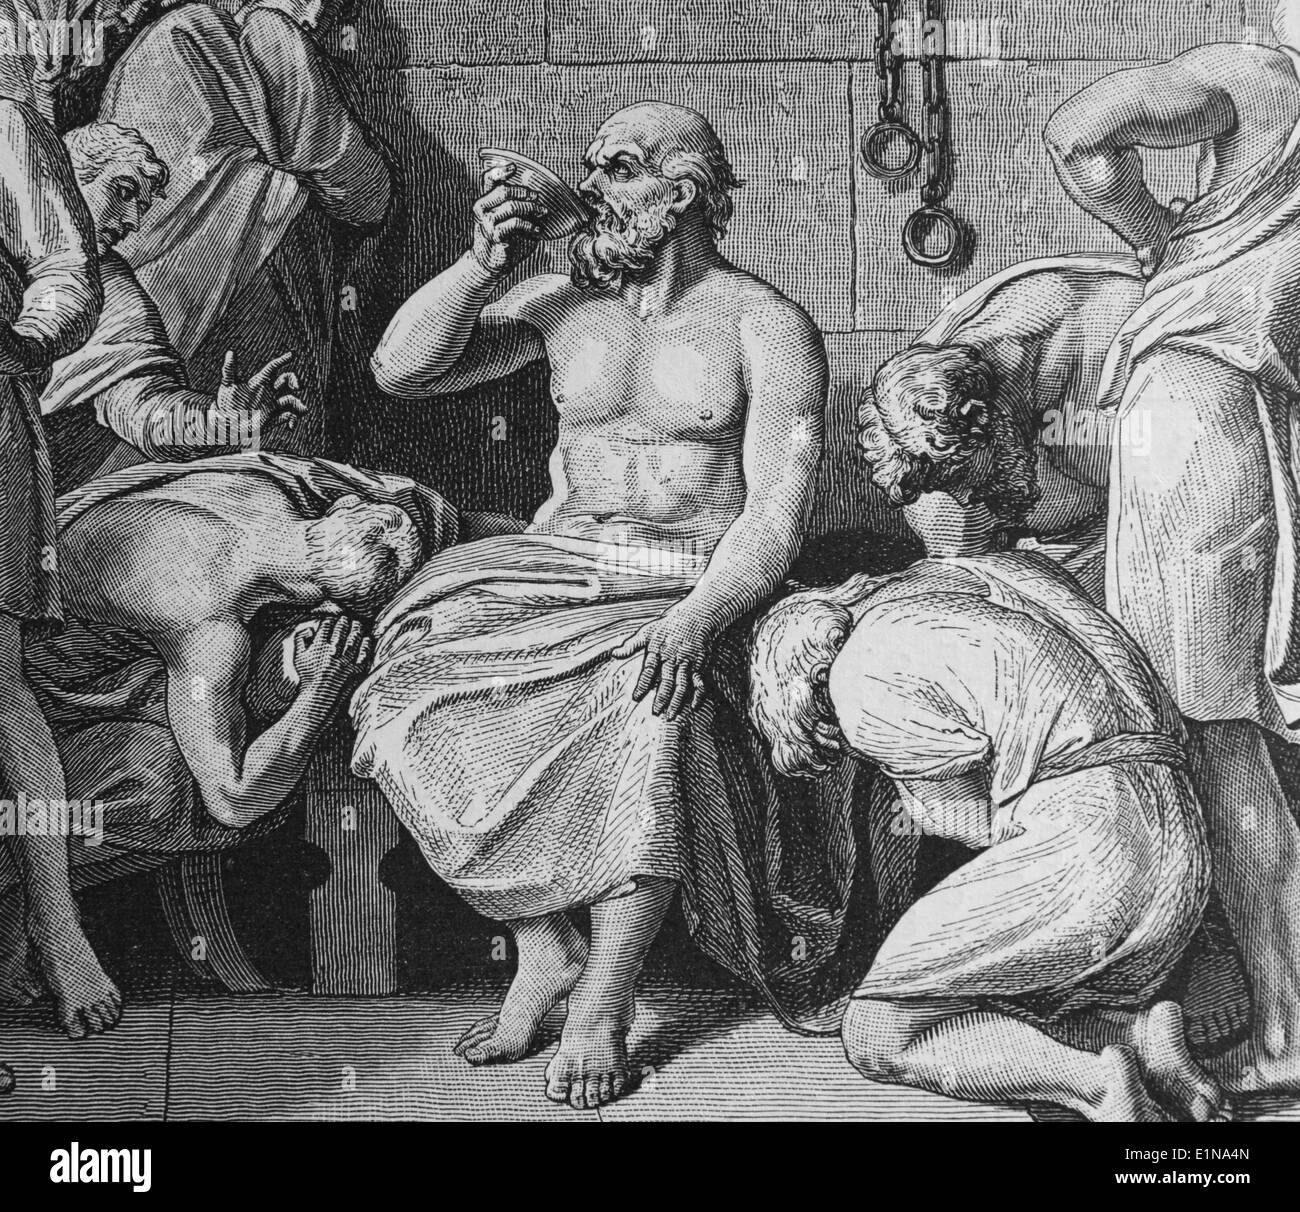 Tod des Sokrates (469-399 v. Chr.) durch das Trinken von Poison. Klassischer griechischer Philosoph. Kupferstich, 1880. Griechenland und Rom. Stockfoto